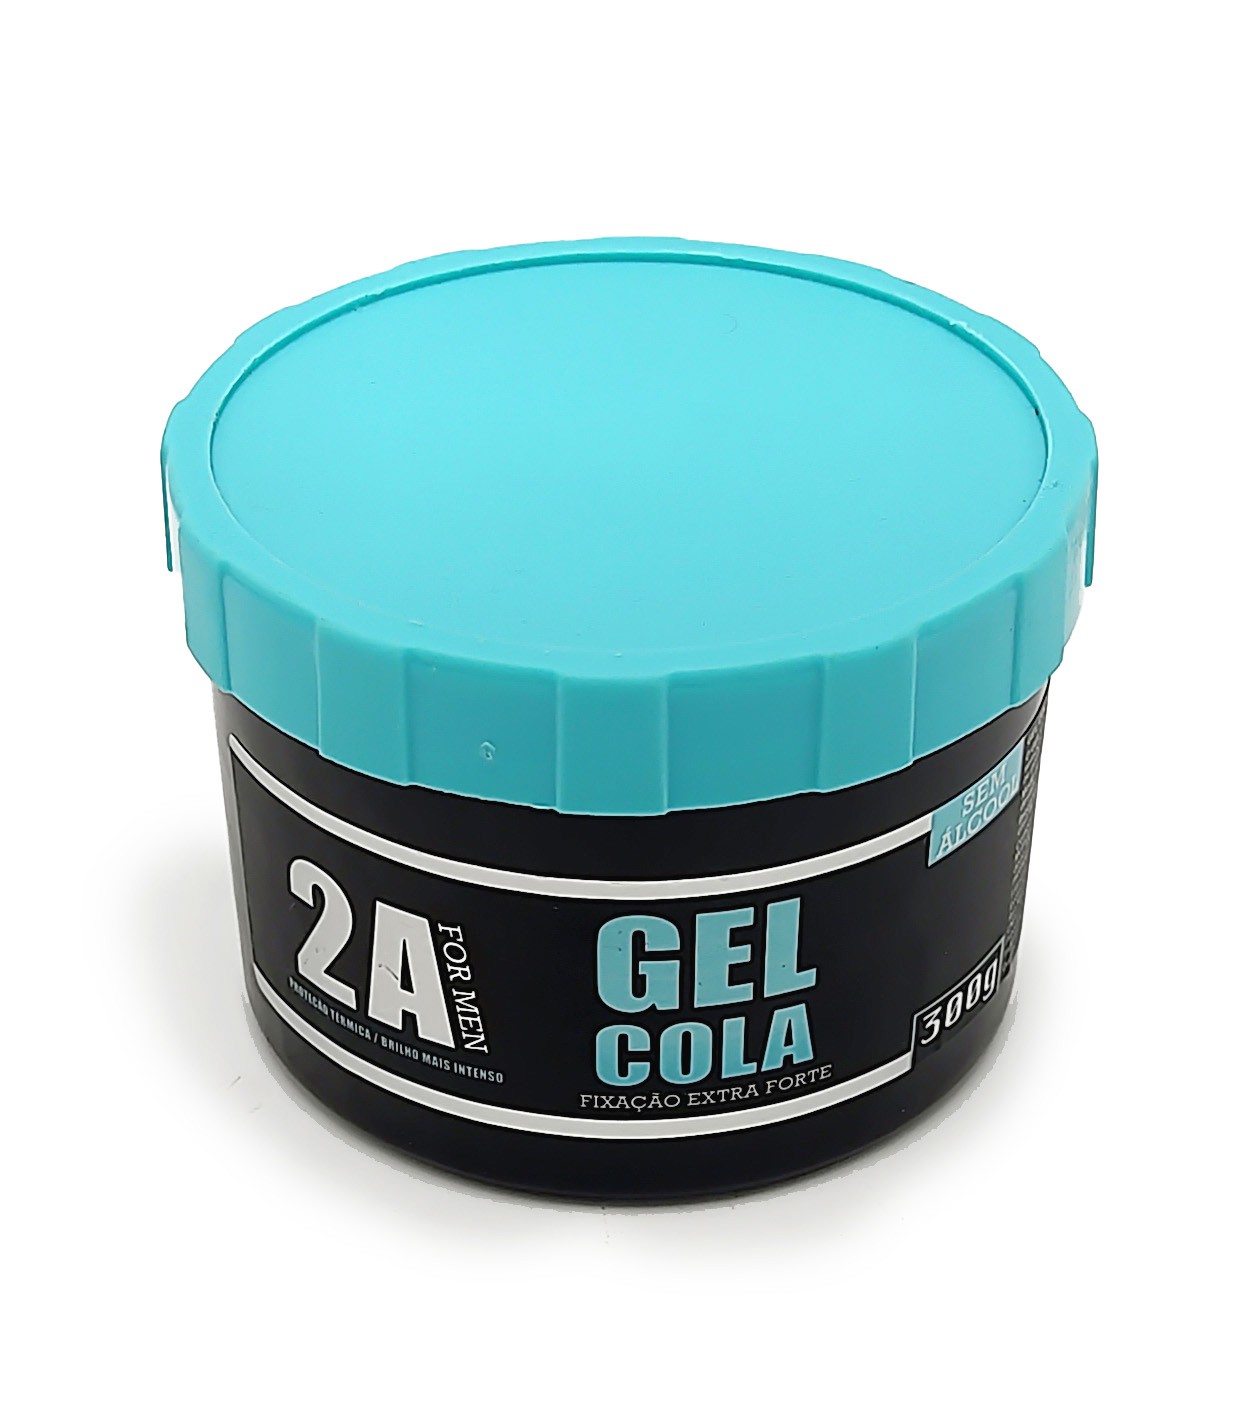 Gel Cola - Confira tudo que Você Precisa Saber sobre esse Produto